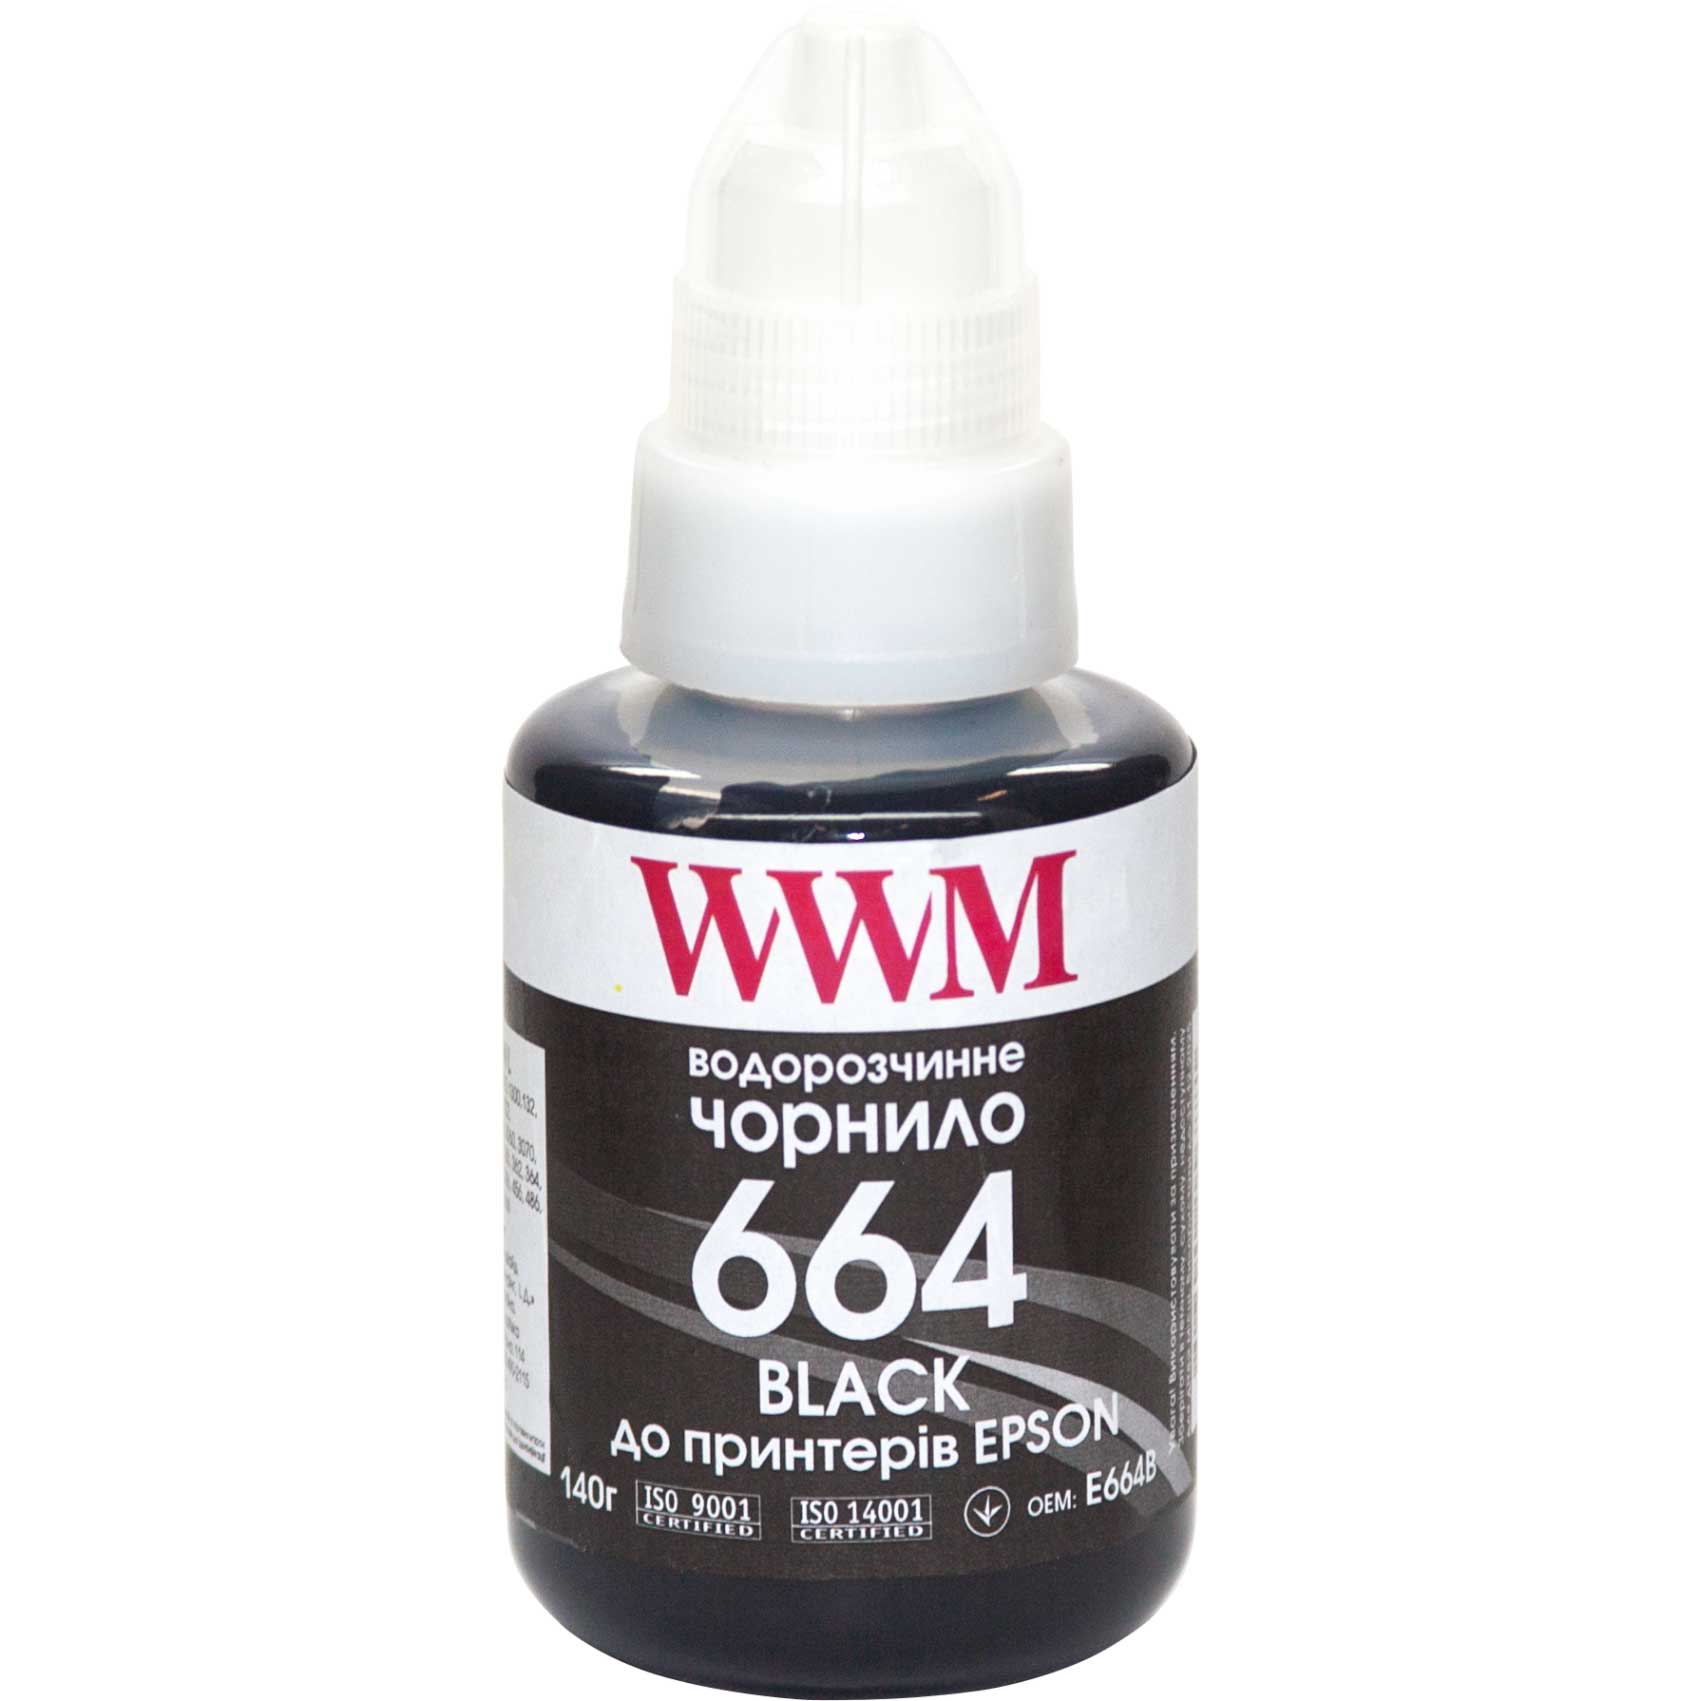 Чорнило WWM 664 для Epson L100/200/L300/L500 (Black) 140ml | Купити в інтернет магазині